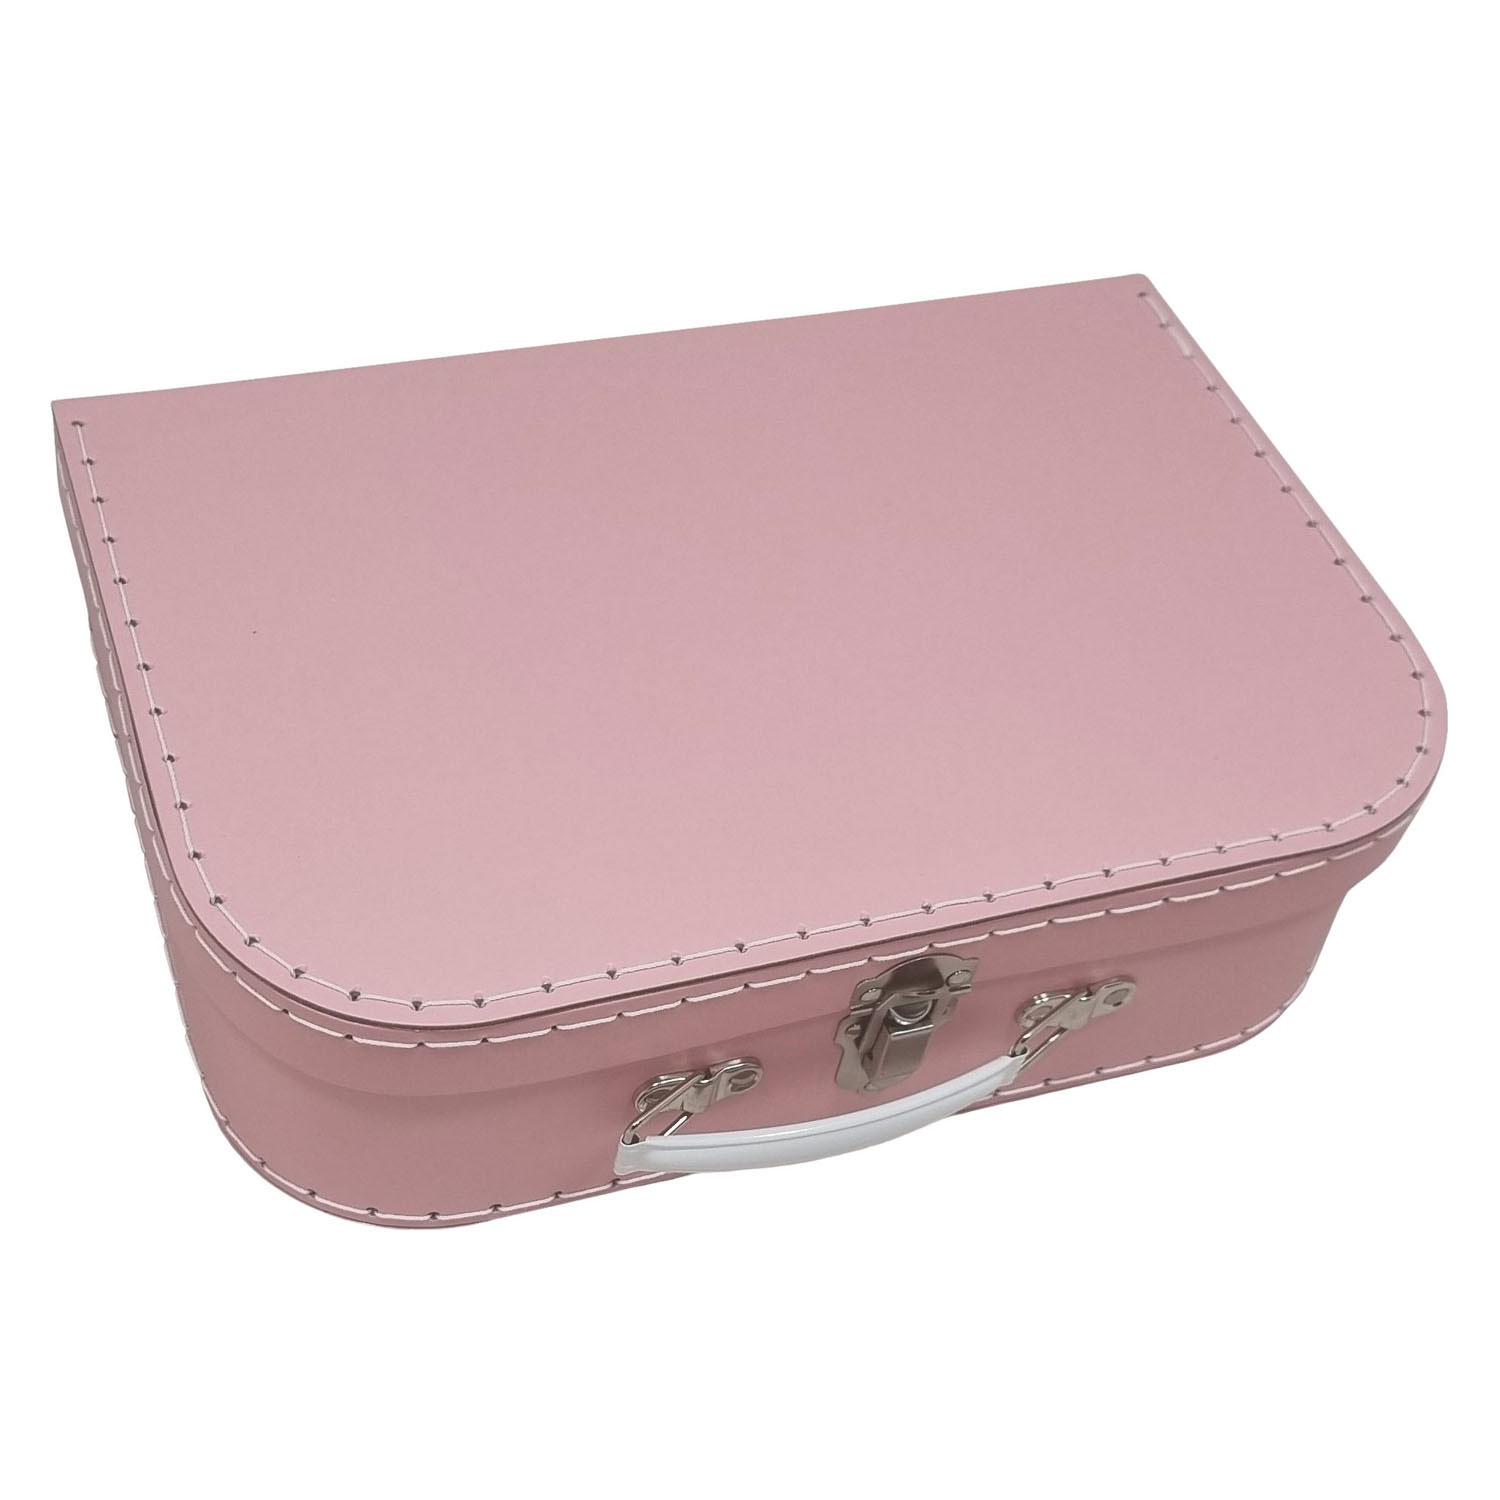 Karton-Koffer-Set Pink, 3-tlg.